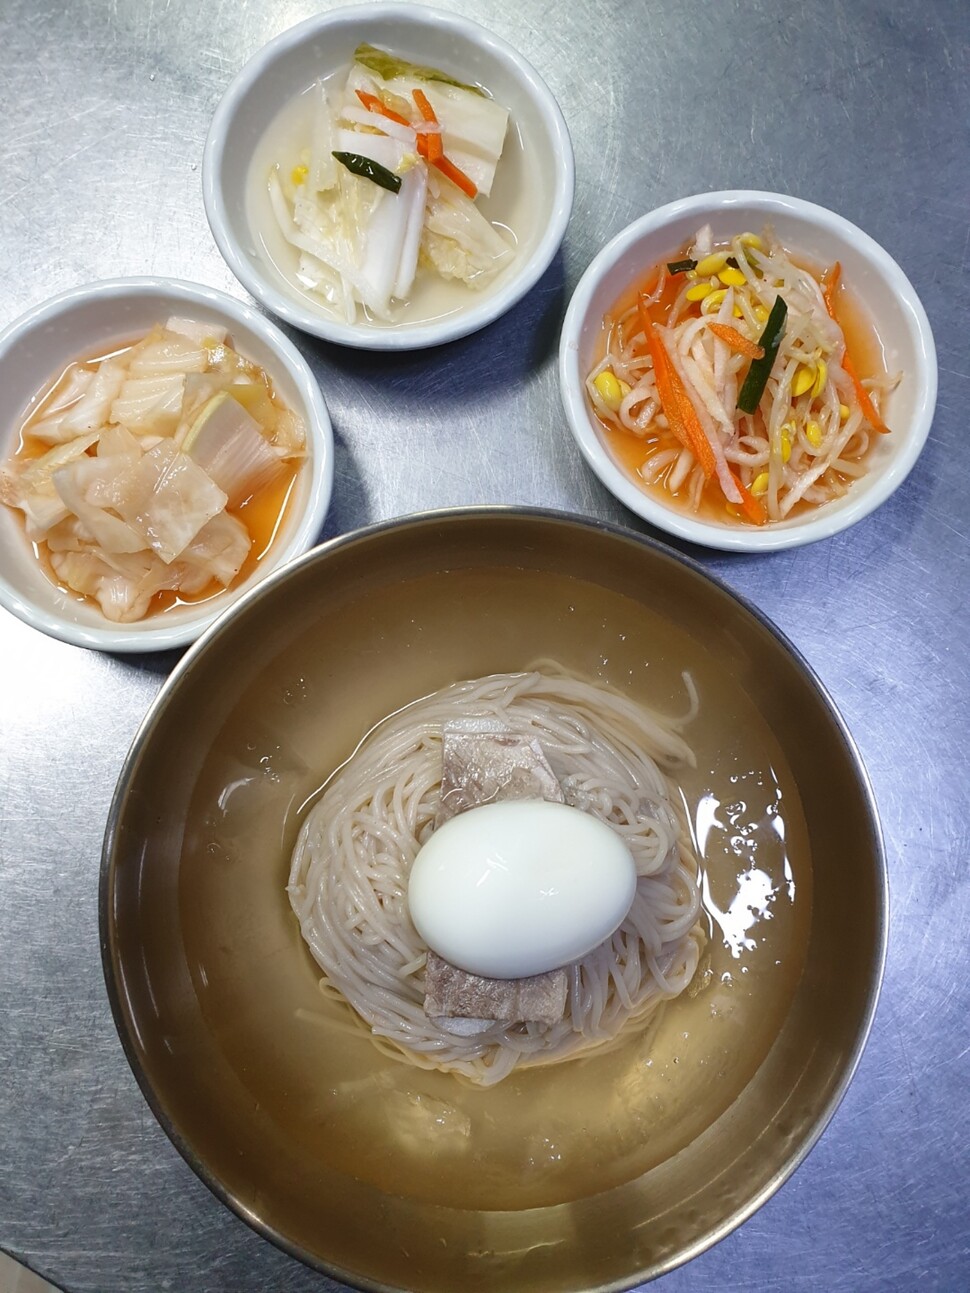 북한에서 활동하다 월남한 윤종철 요리사가 만든 동무밥상 냉면. 윤종철 제공